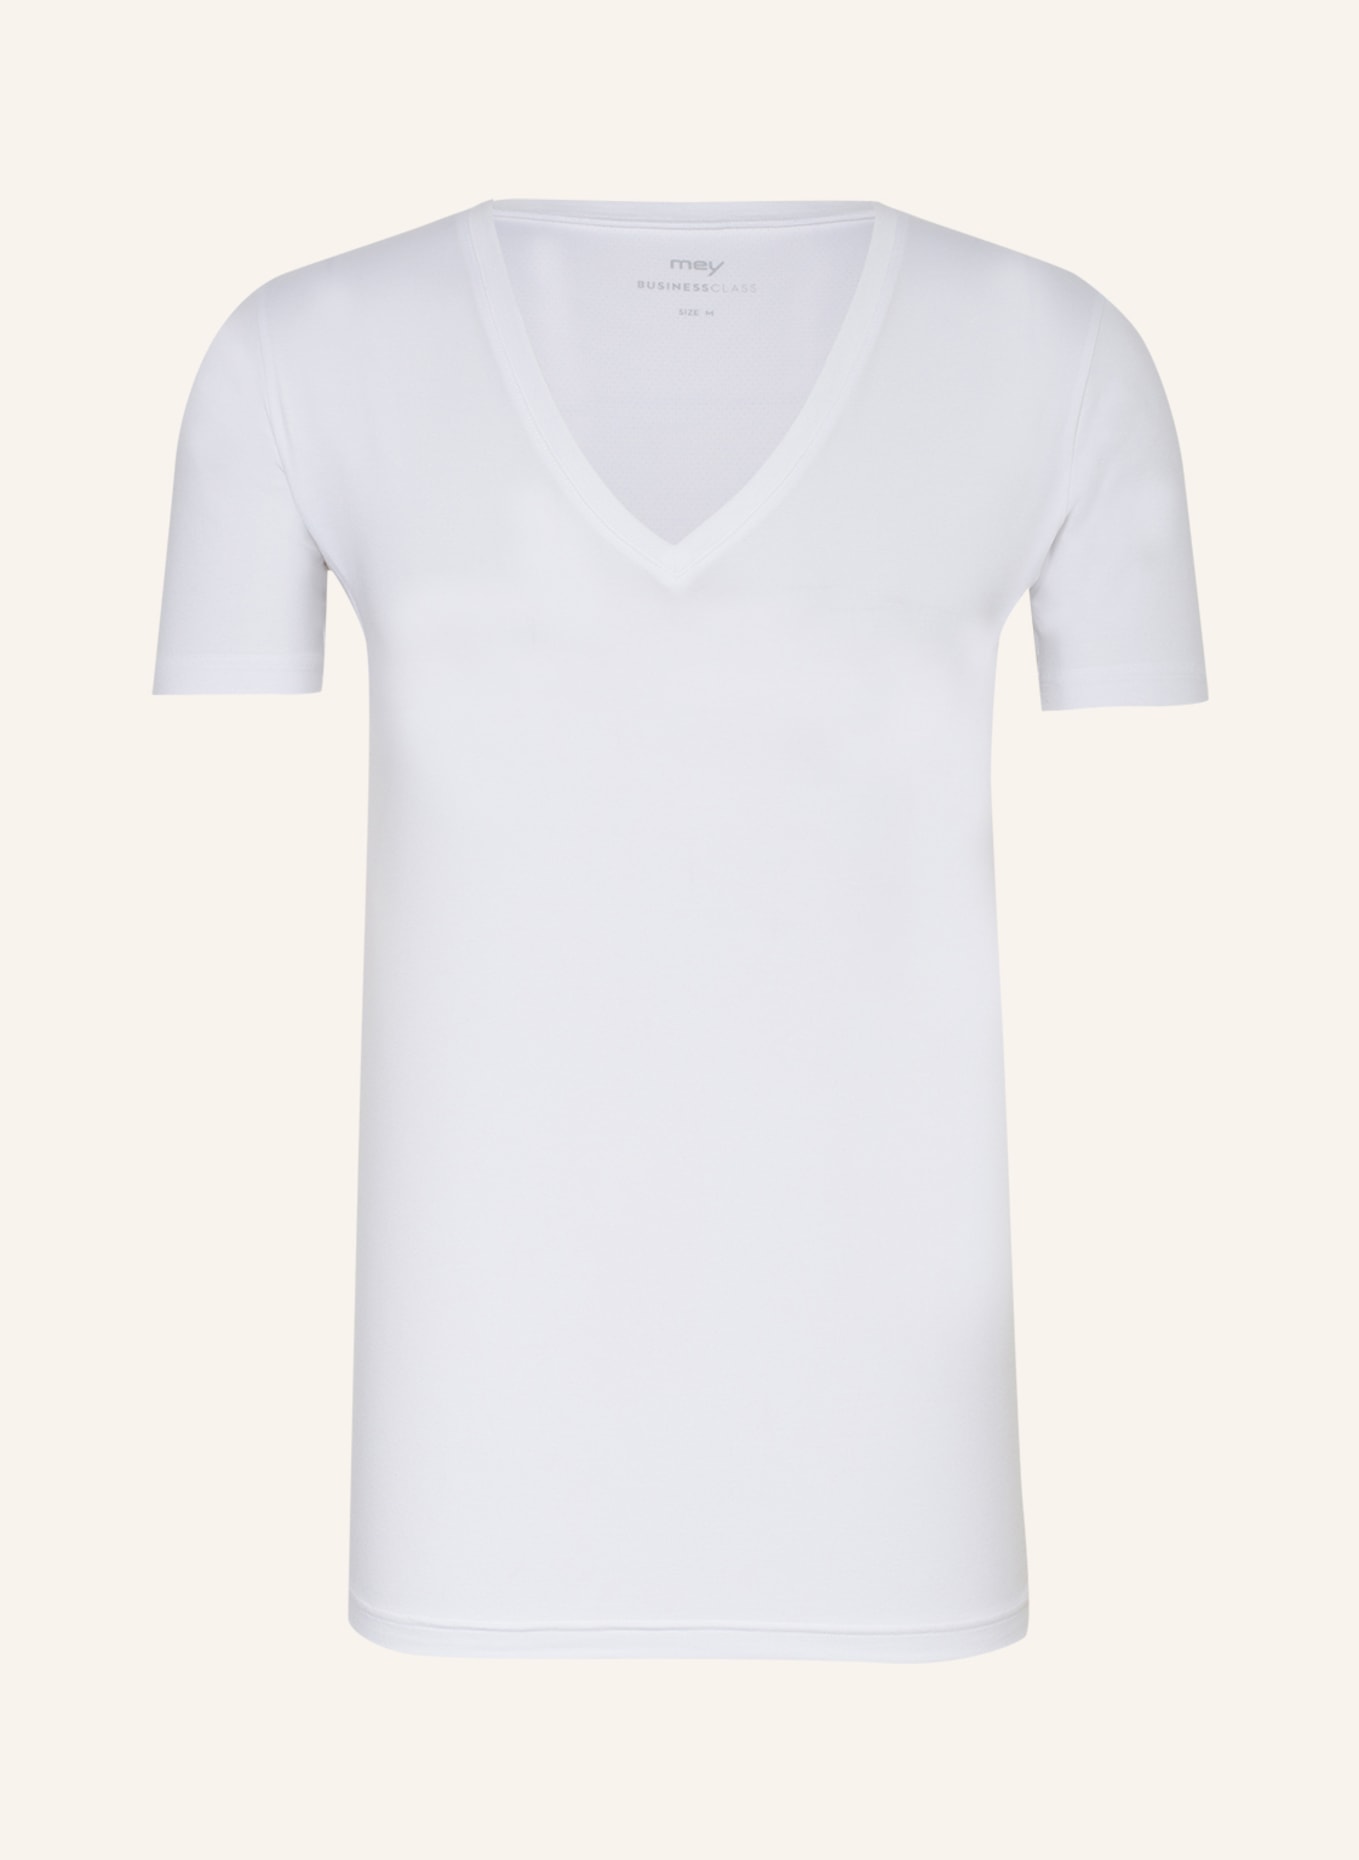 mey V-shirt series BUSINESS CLASS, Color: WHITE (Image 1)